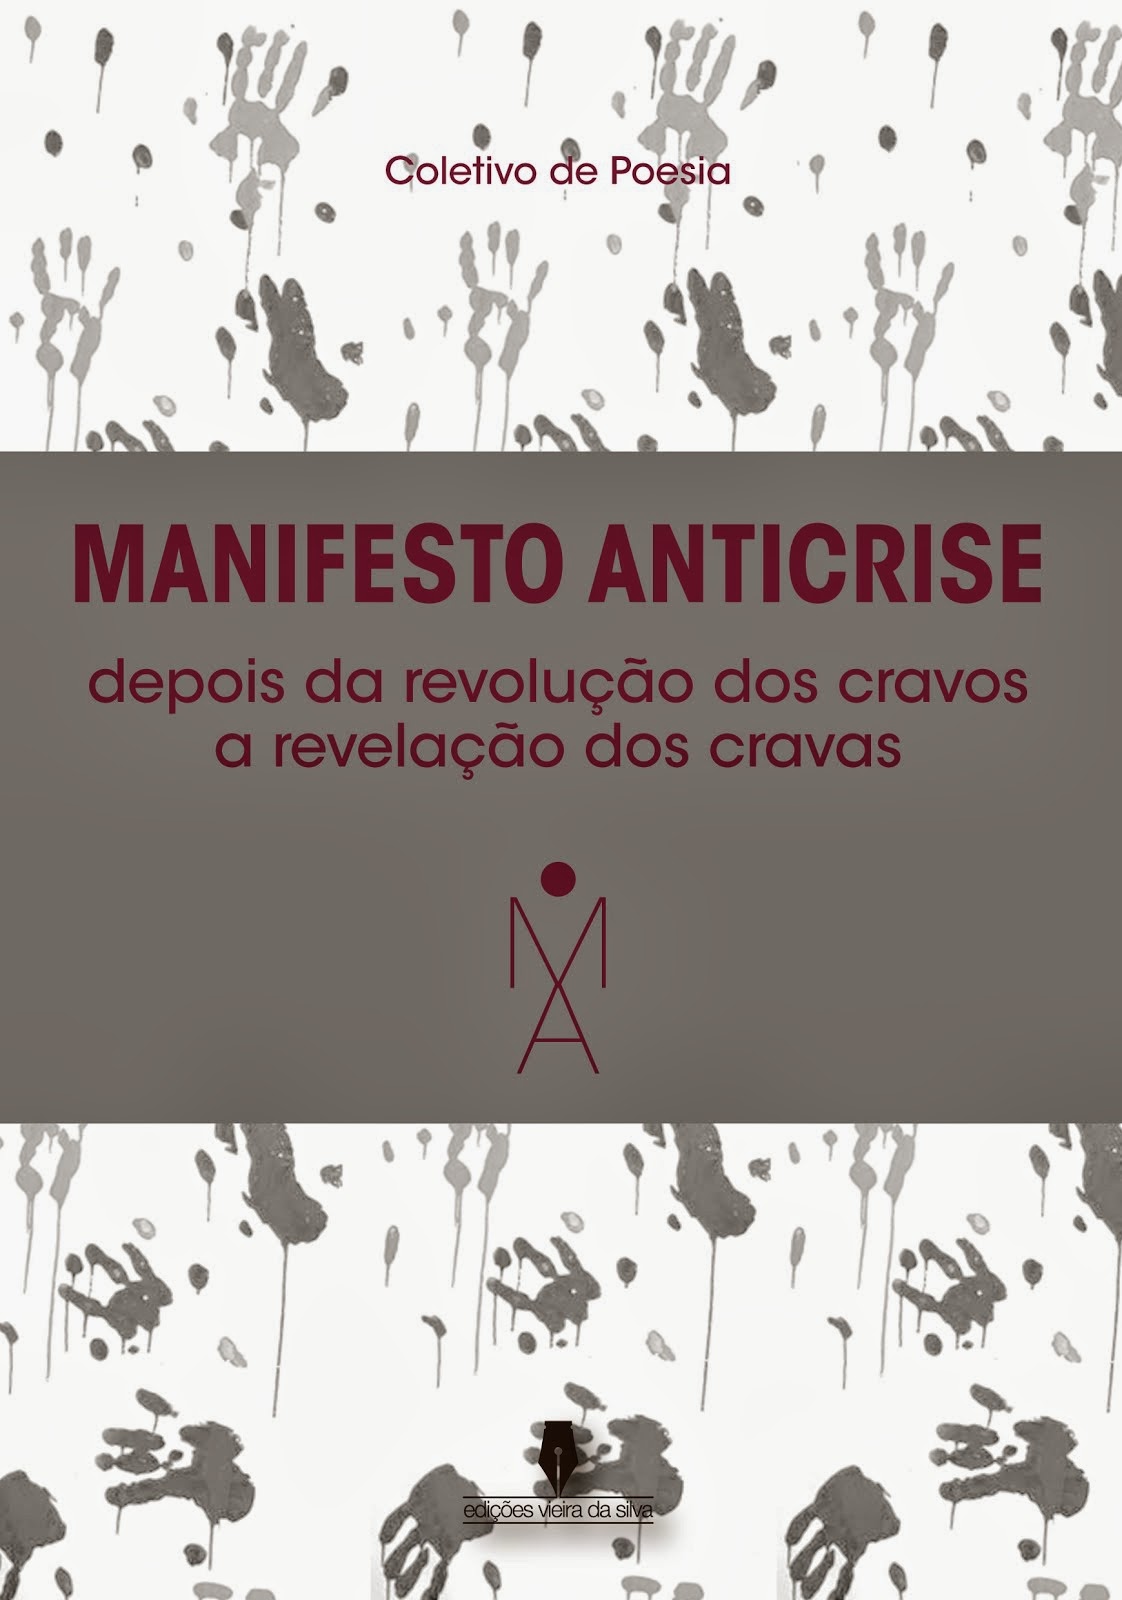 "Manifesto Anticrise"